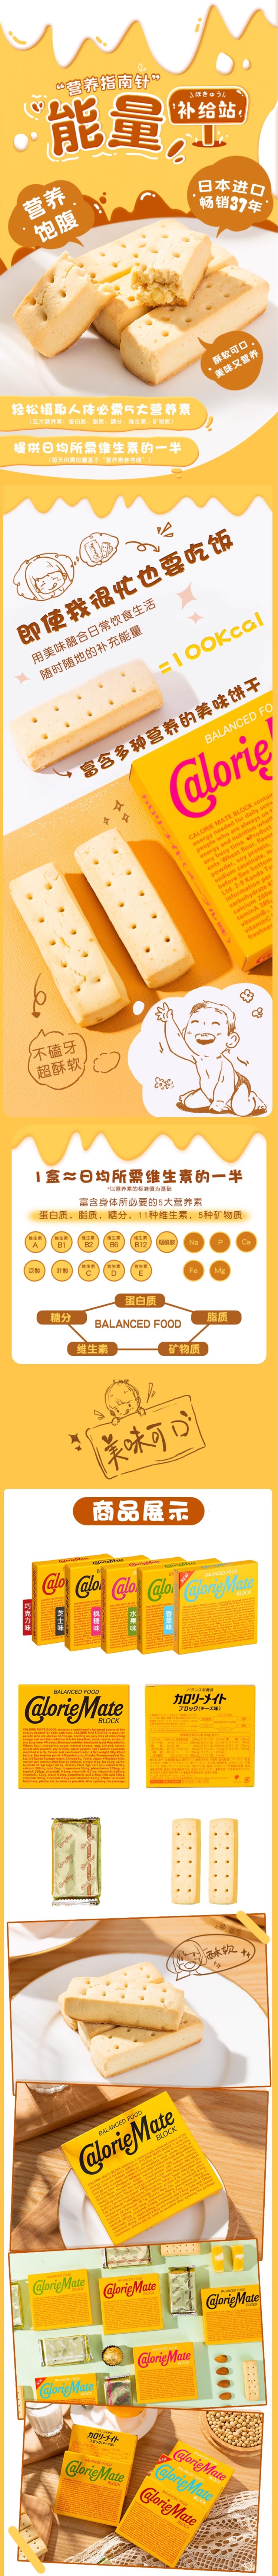 【日本直郵】歐陽娜娜推薦 OTSUKA大塚 卡路里控制平衡能量餅 香草味(新口味) 80g